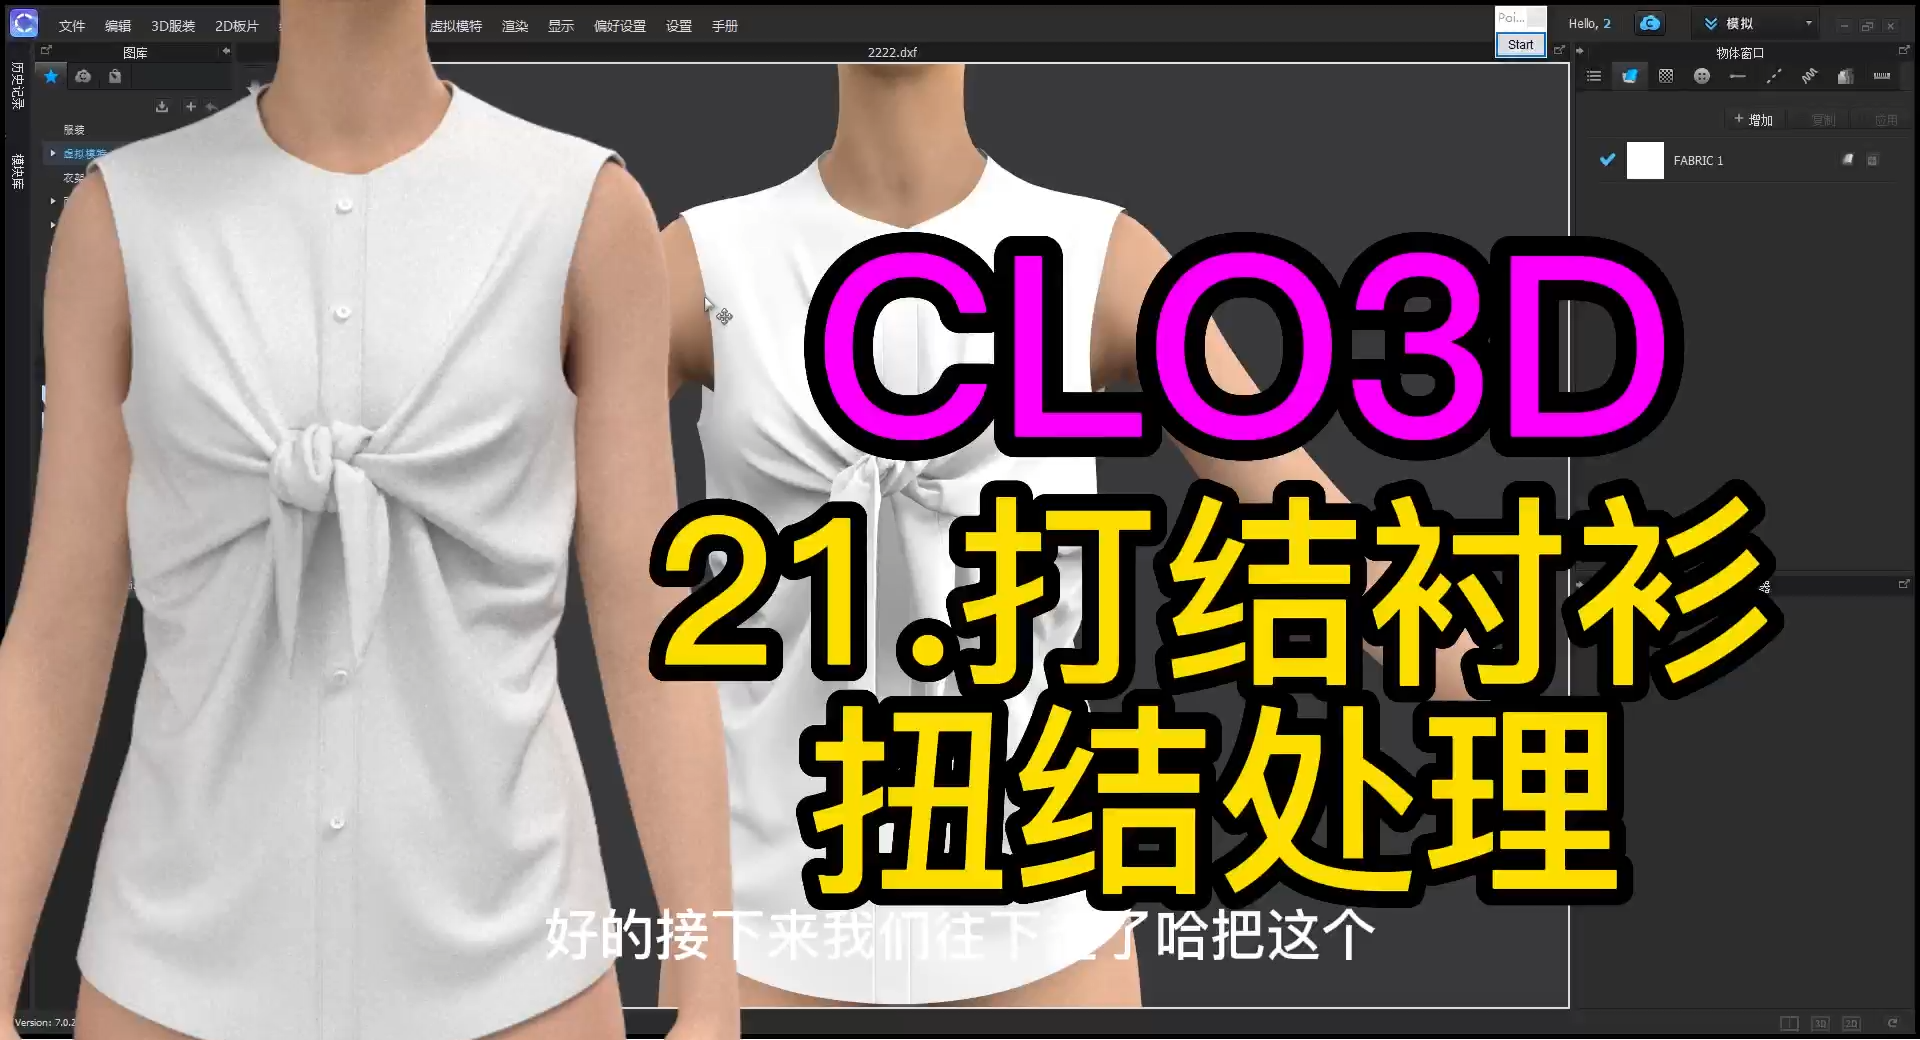 21.CLO3D打结衬衫-扭结处理.